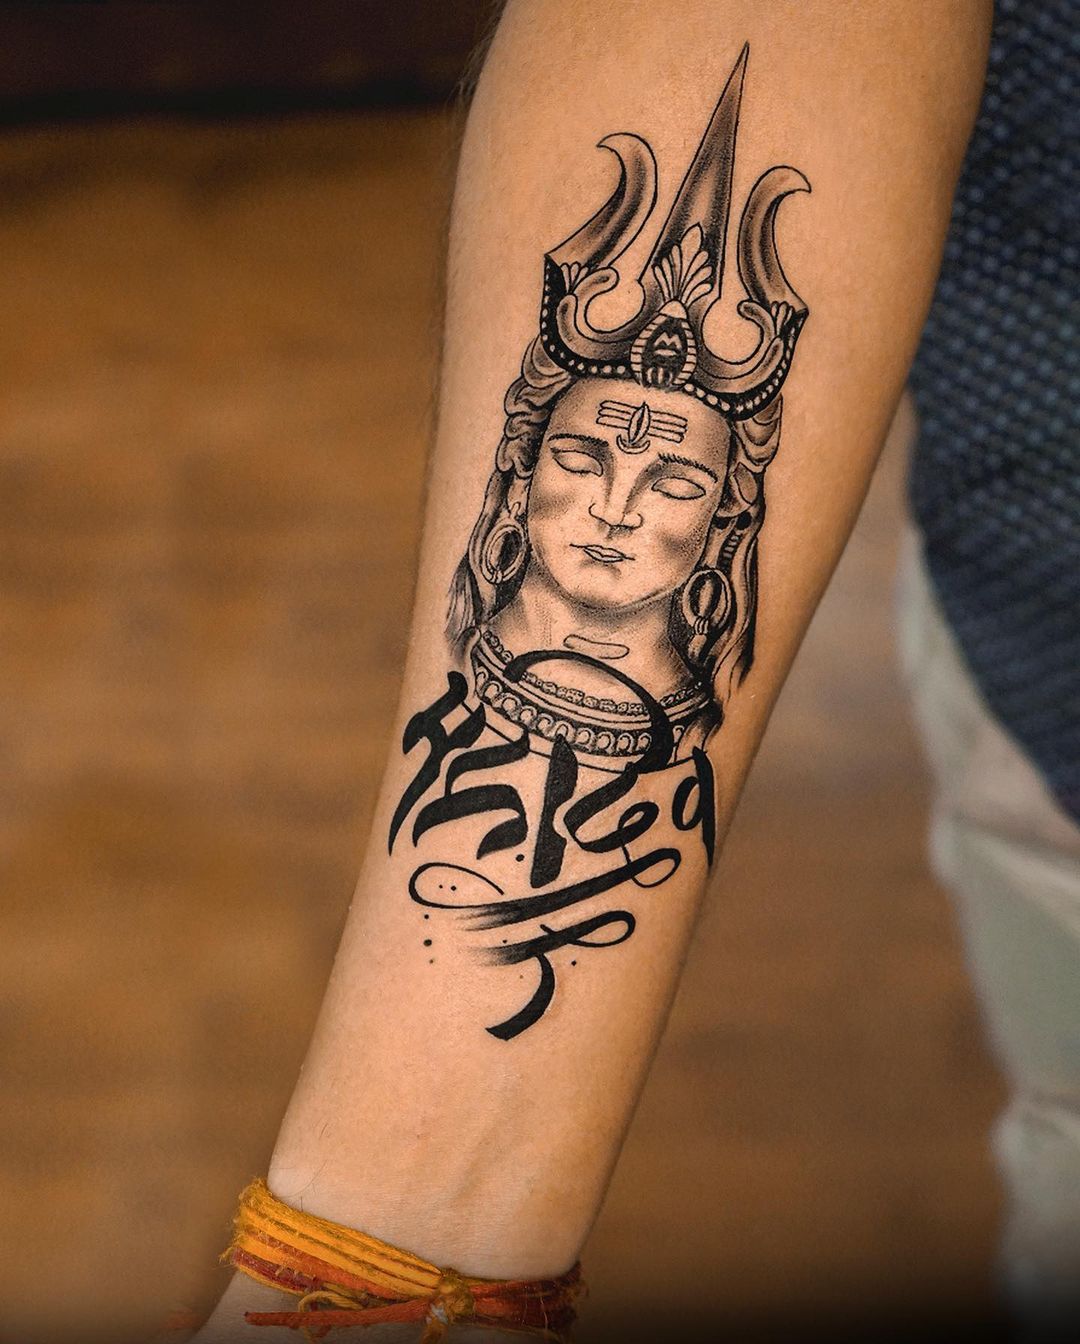 Shiva tattoo ideas